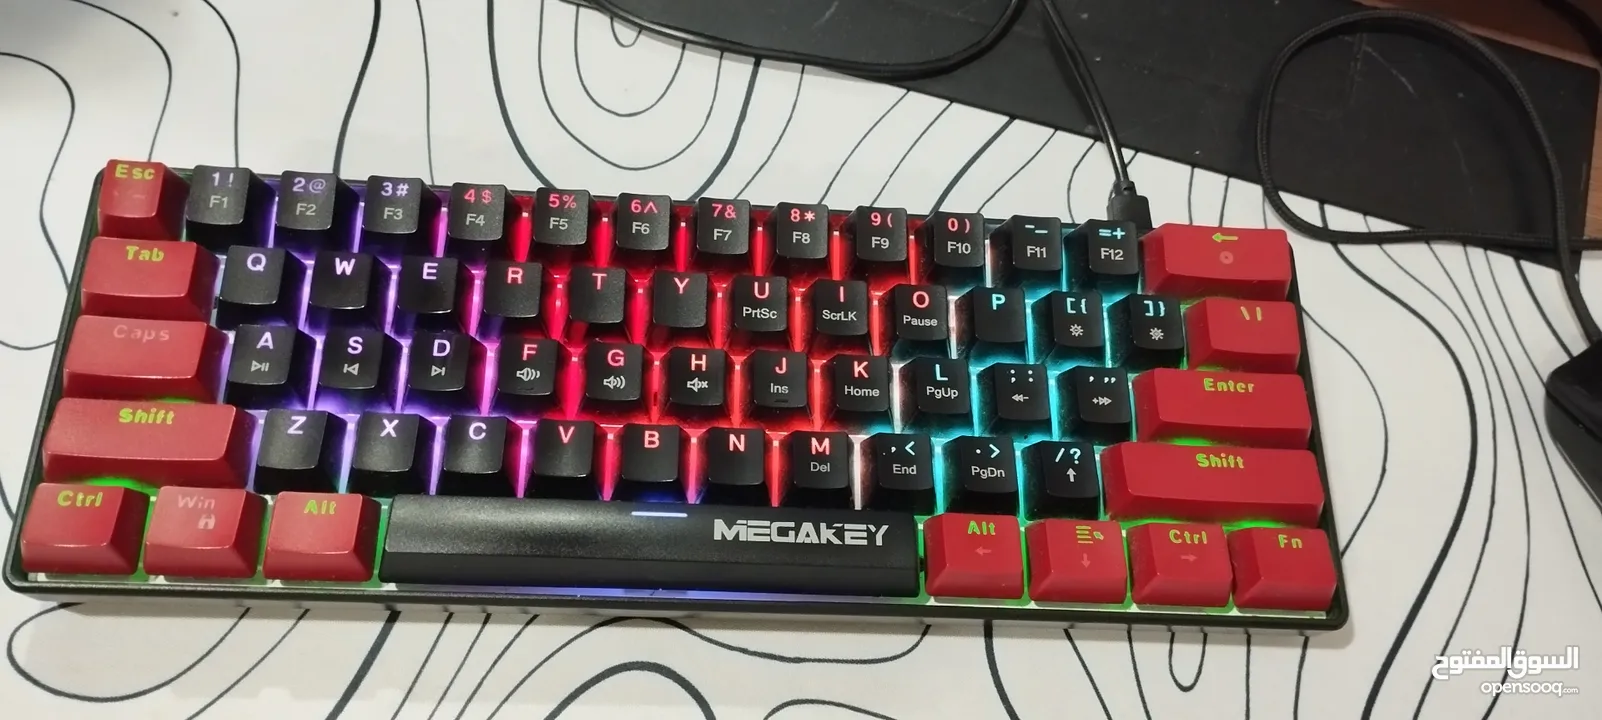 mega keyboard gaming كيبورد